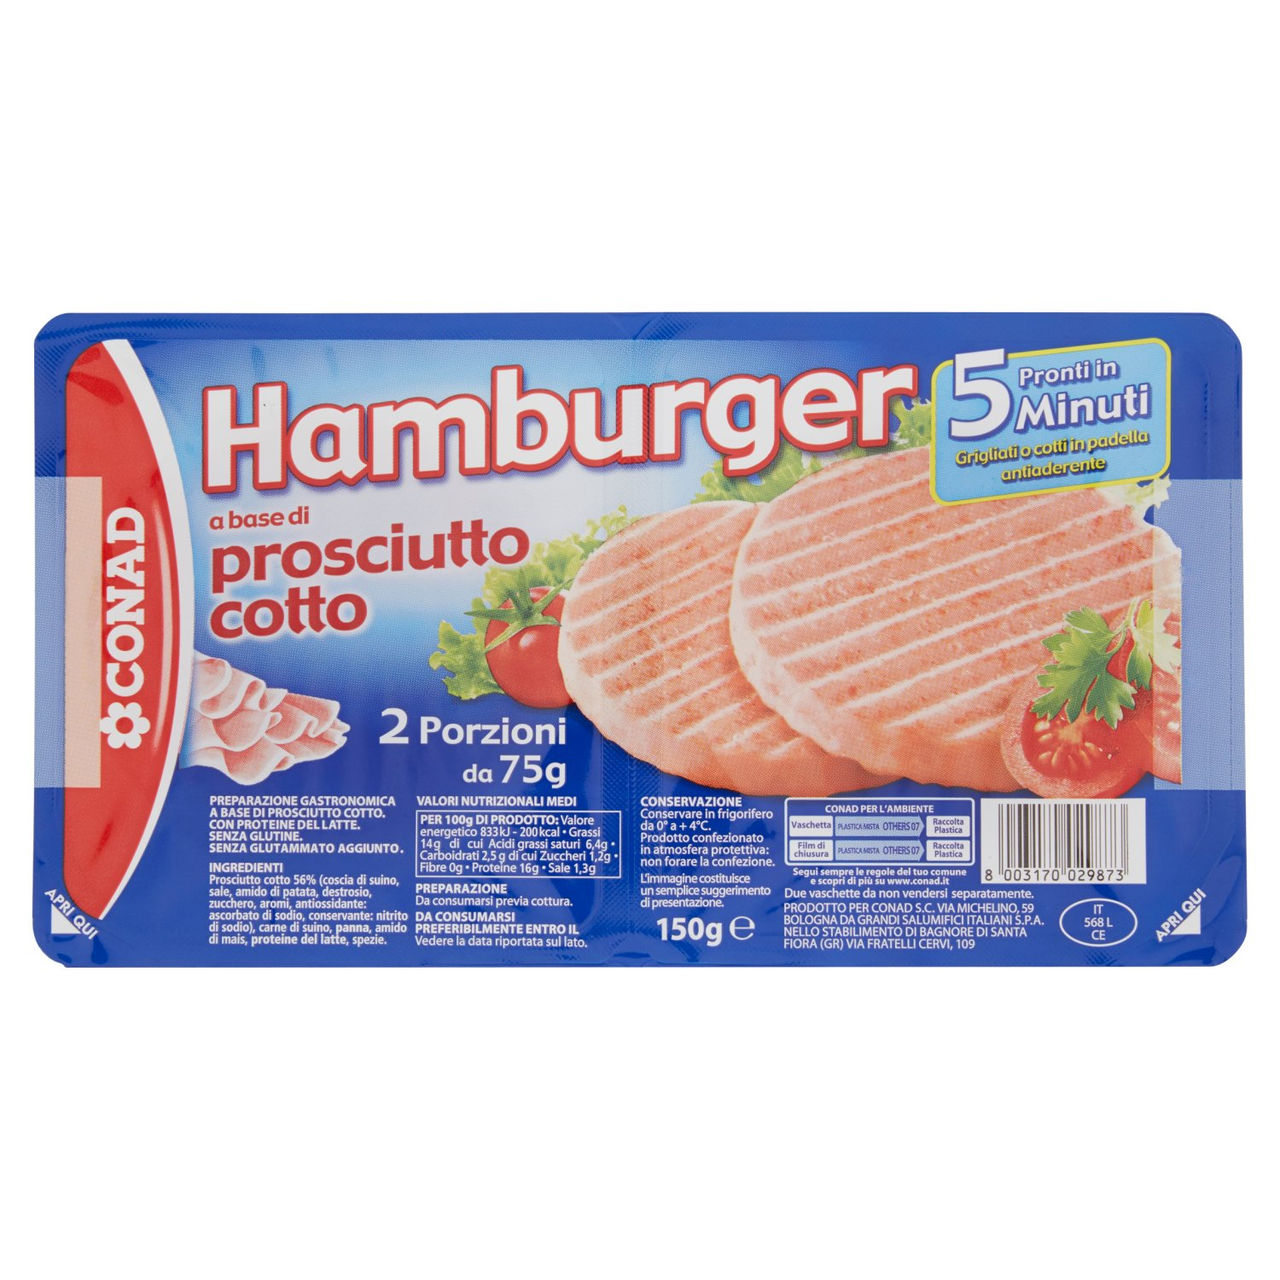 Hamburger Prosciutto Cotto 2 x 75g Conad online